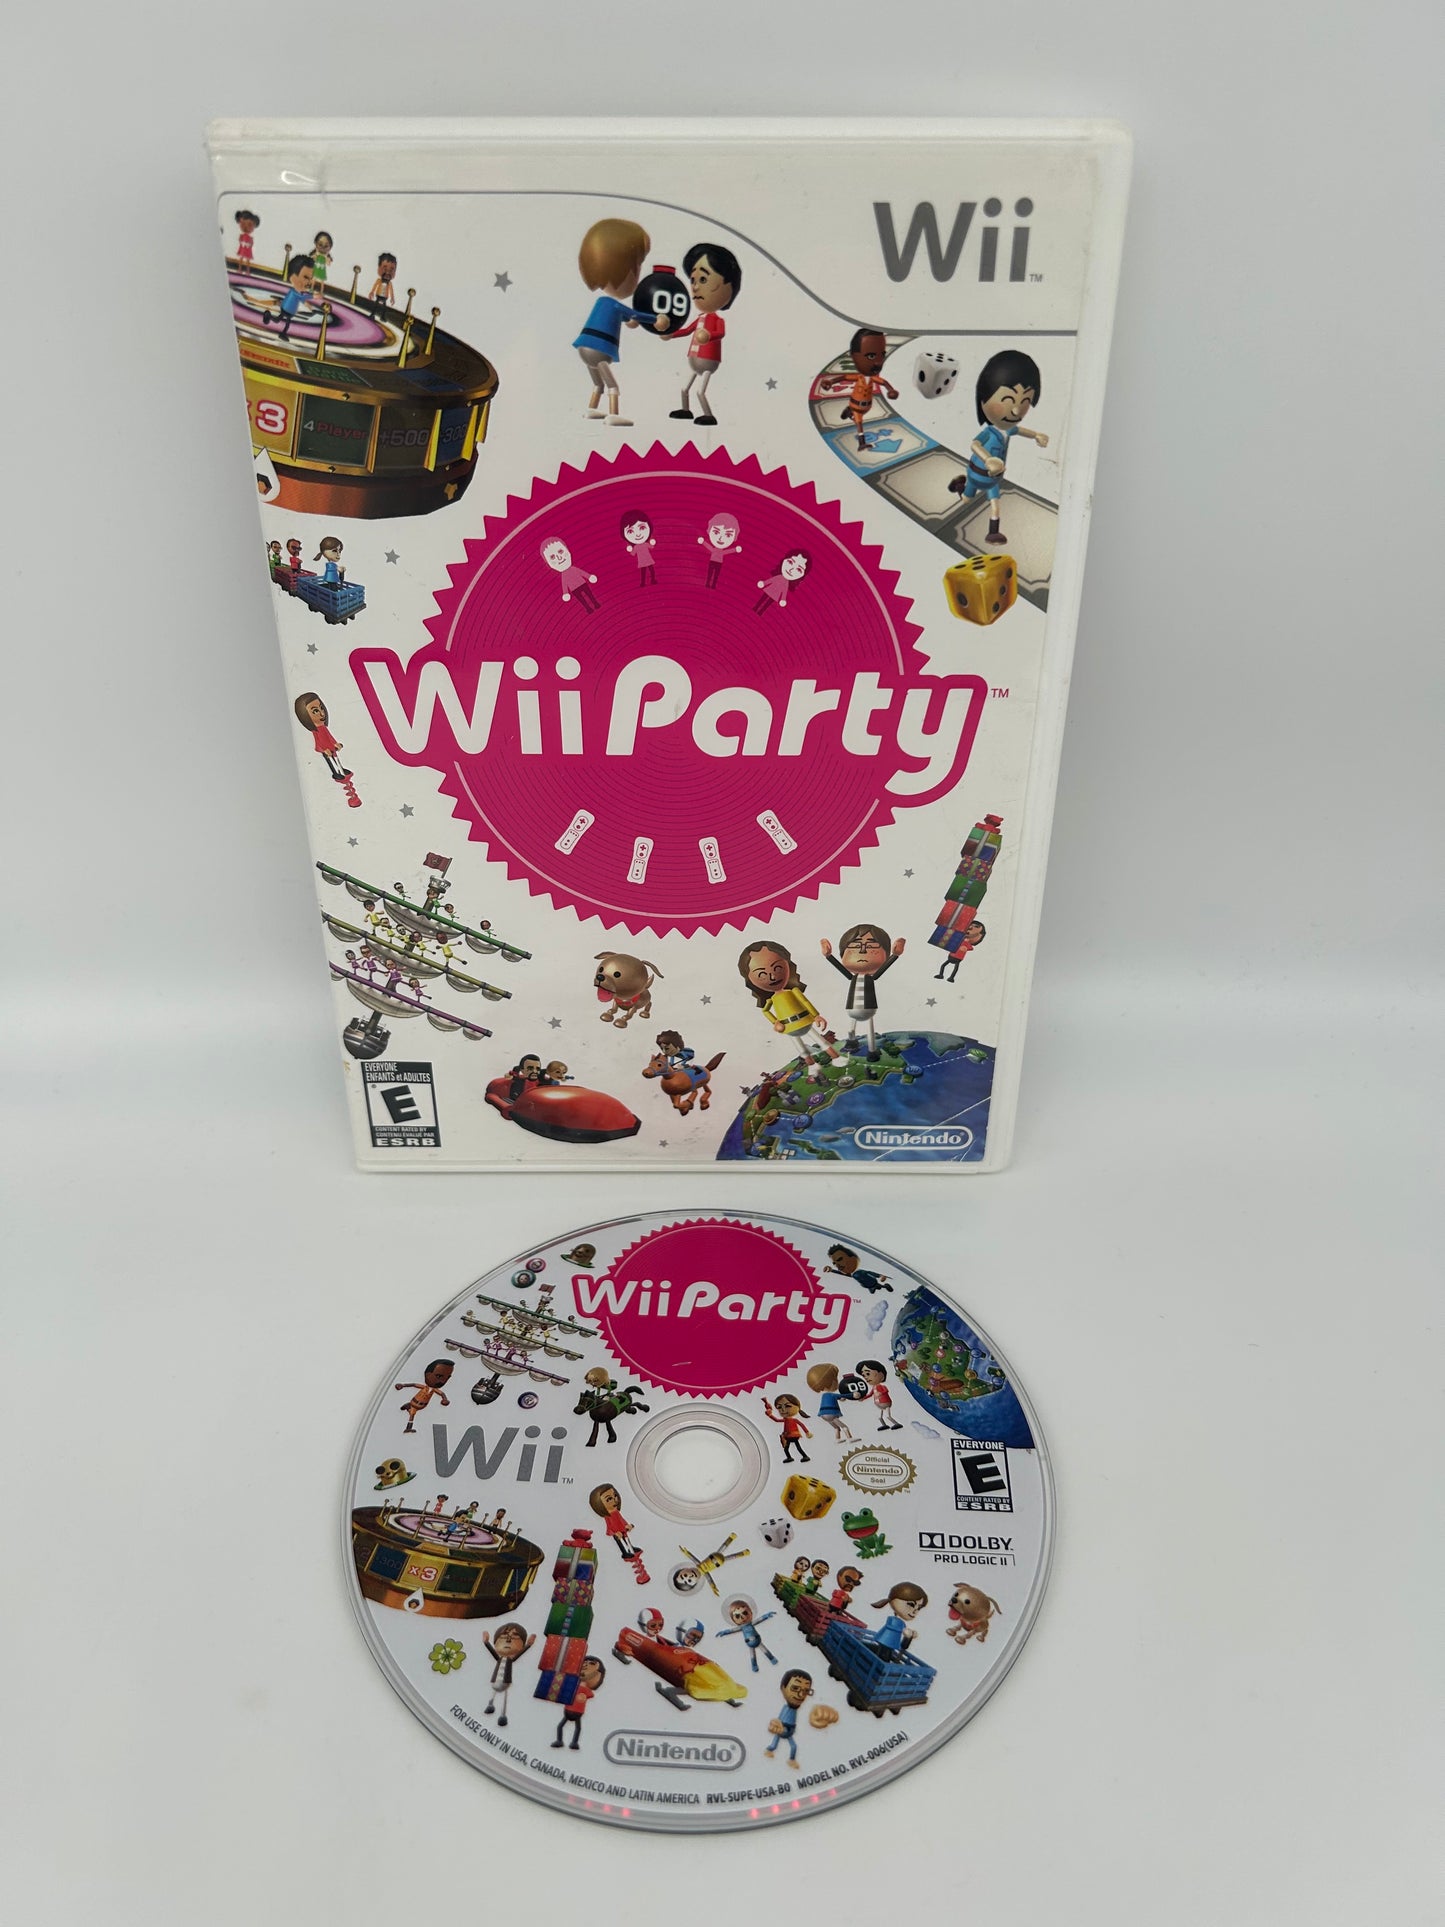 PiXEL-RETRO.COM : NINTENDO WII COMPLET CIB BOX MANUAL GAME NTSC WII PARTY